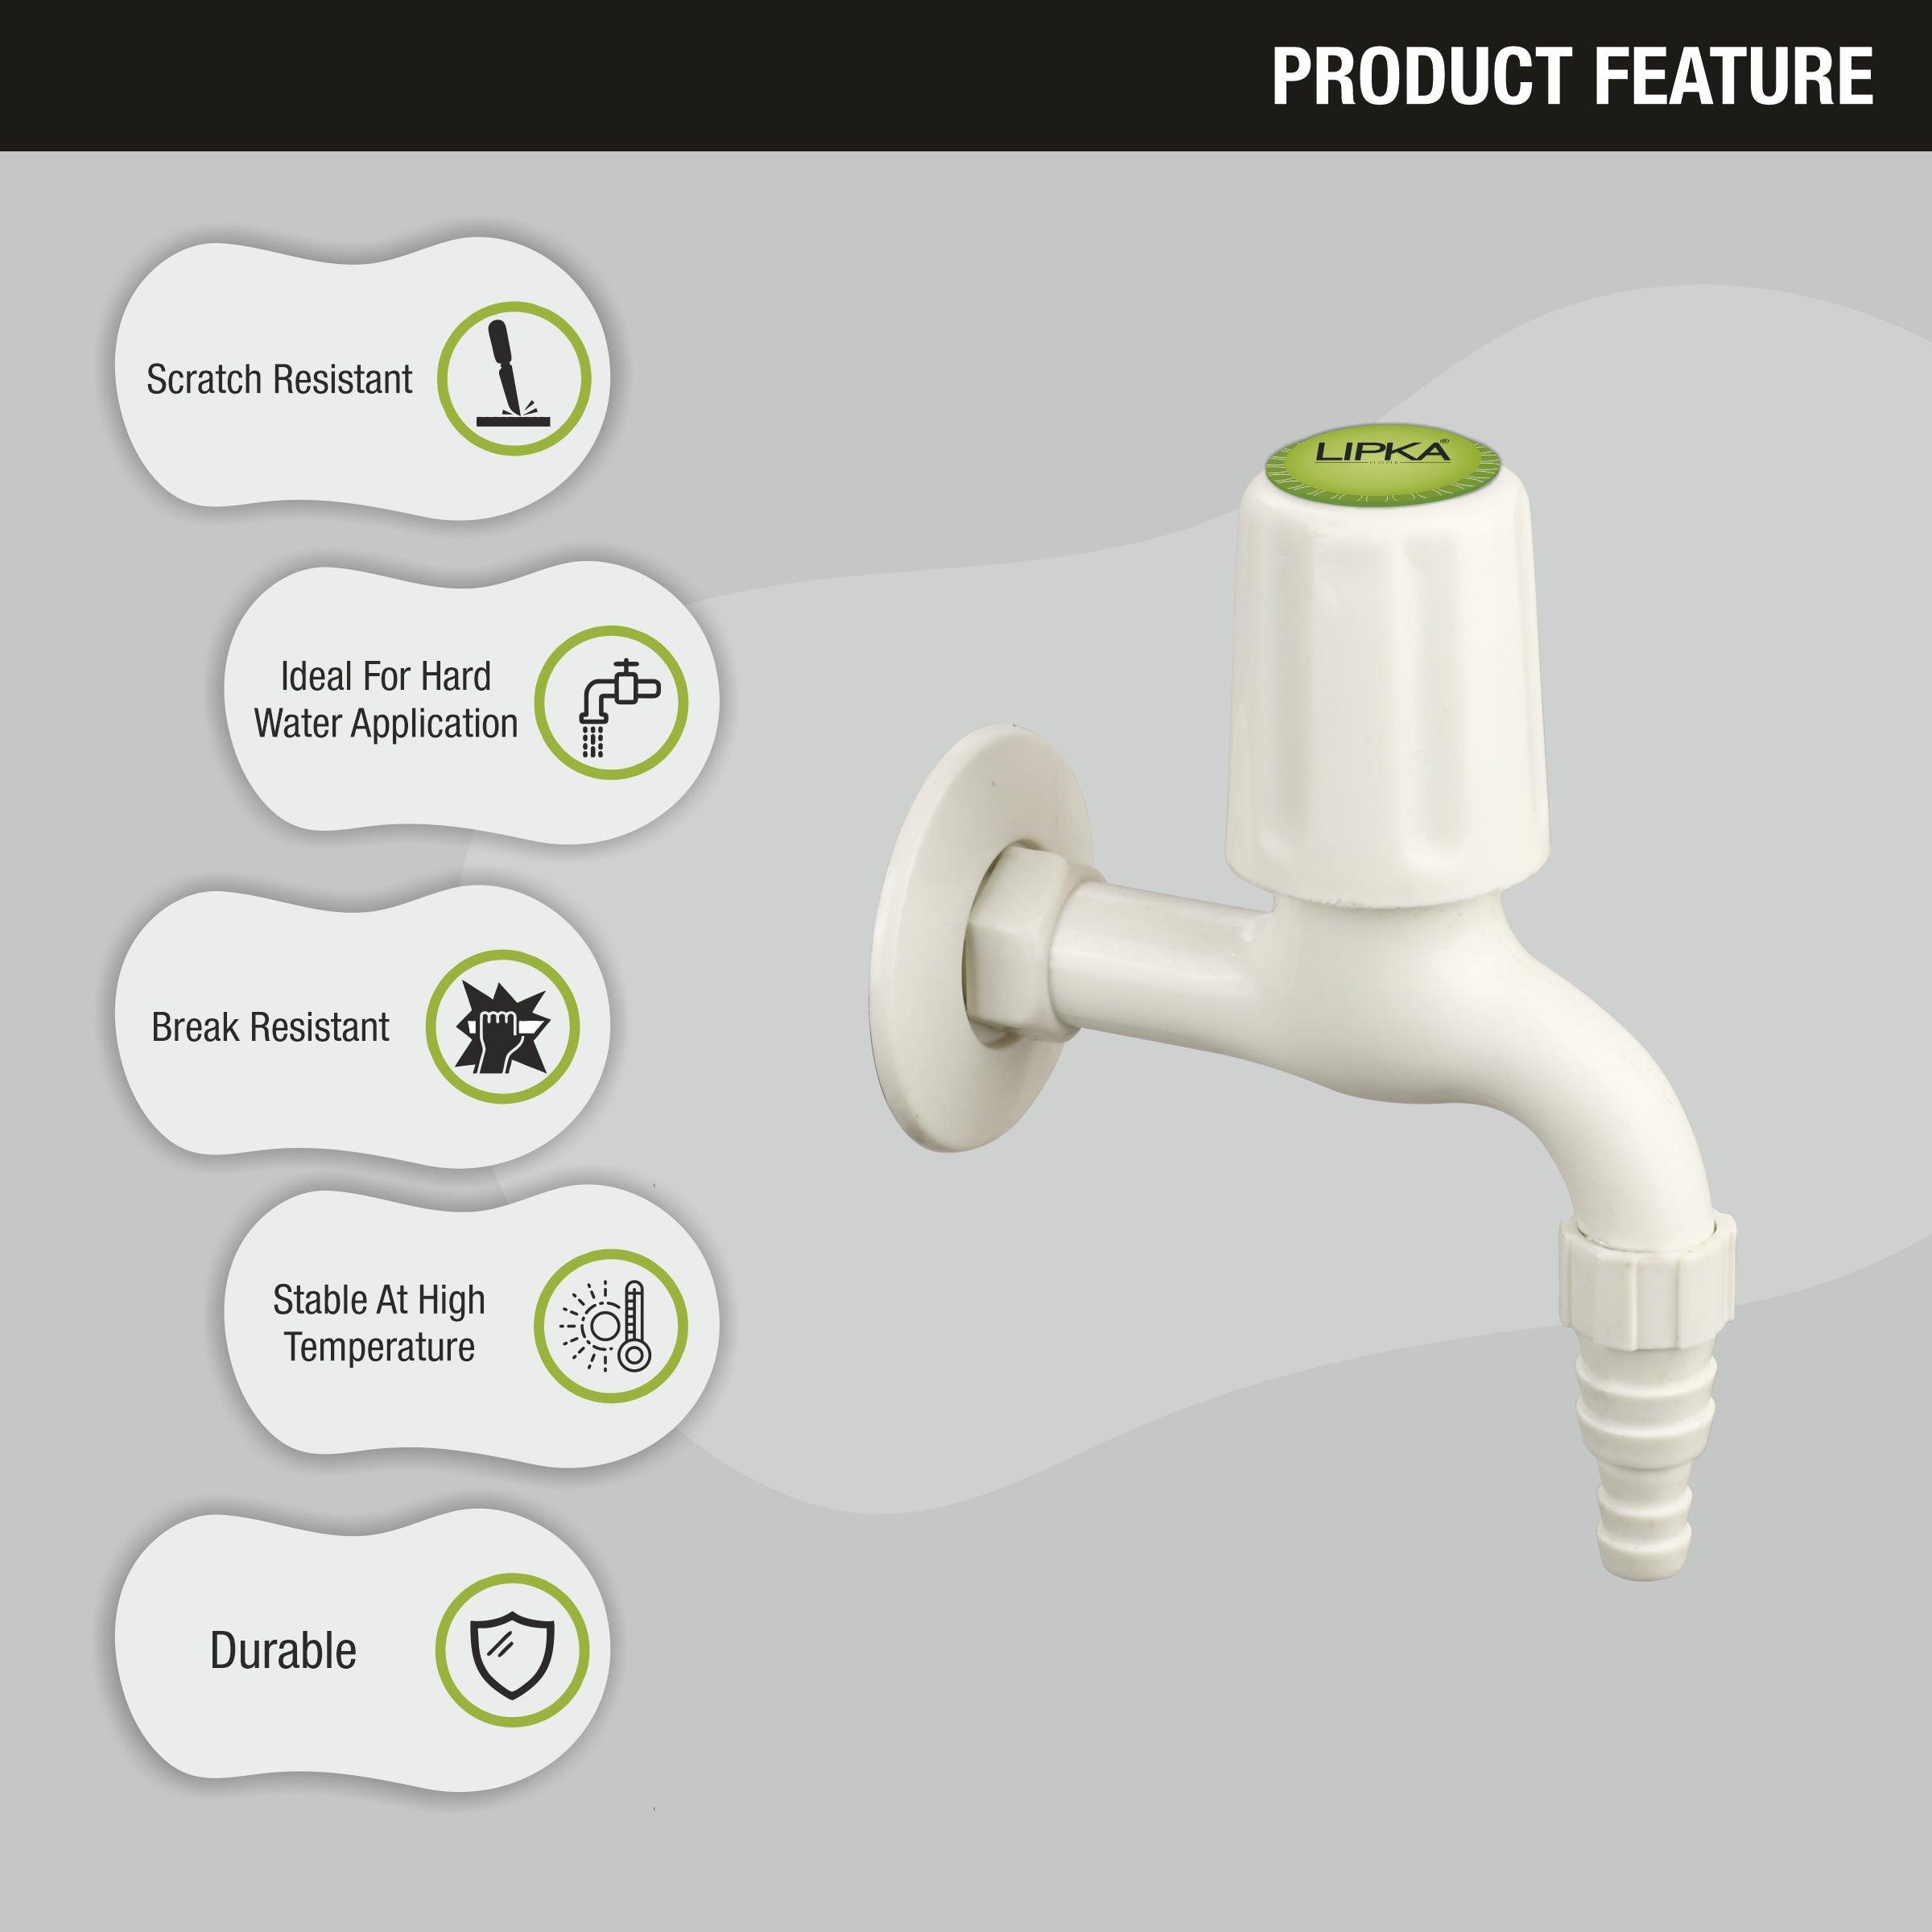 Royal Nozzle Bib Tap PTMT Faucet features